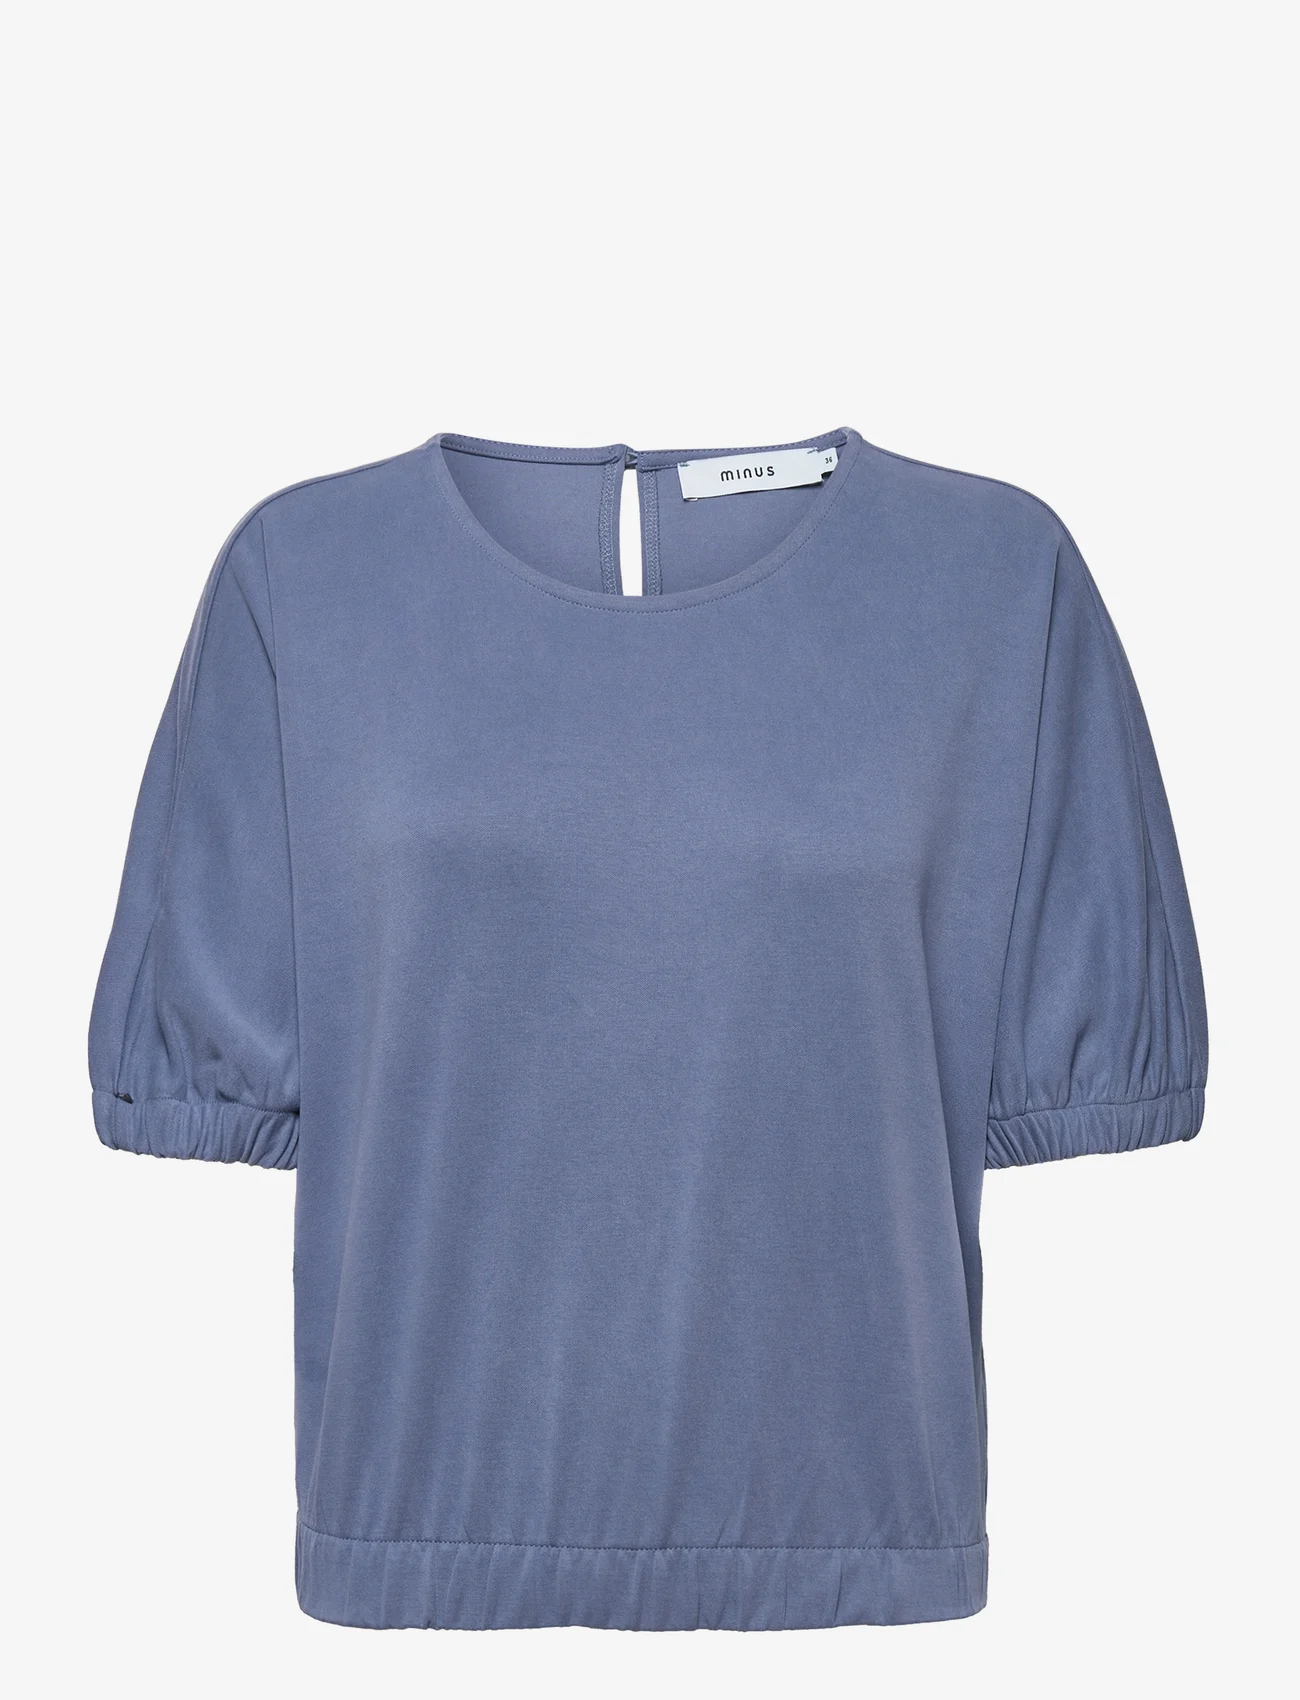 Minus - Addilyn Top - t-shirts & tops - denim blue - 0